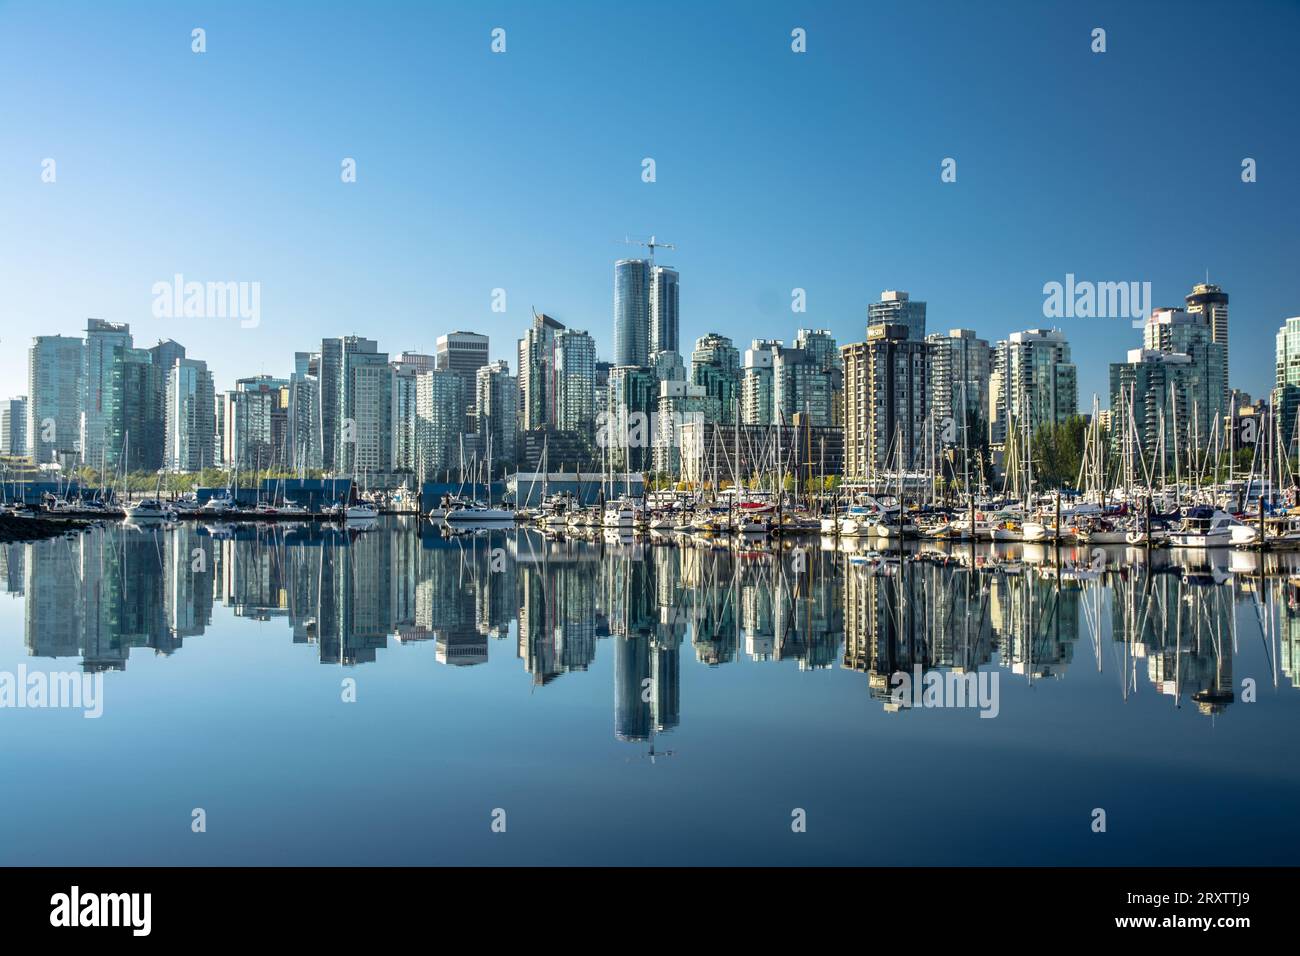 Skyline von Vancouver, mit perfekter Reflexion von Wolkenkratzern im blauen Wasser von Stanley Park, Vancouver, British Columbia, Kanada, Nordamerika Stockfoto